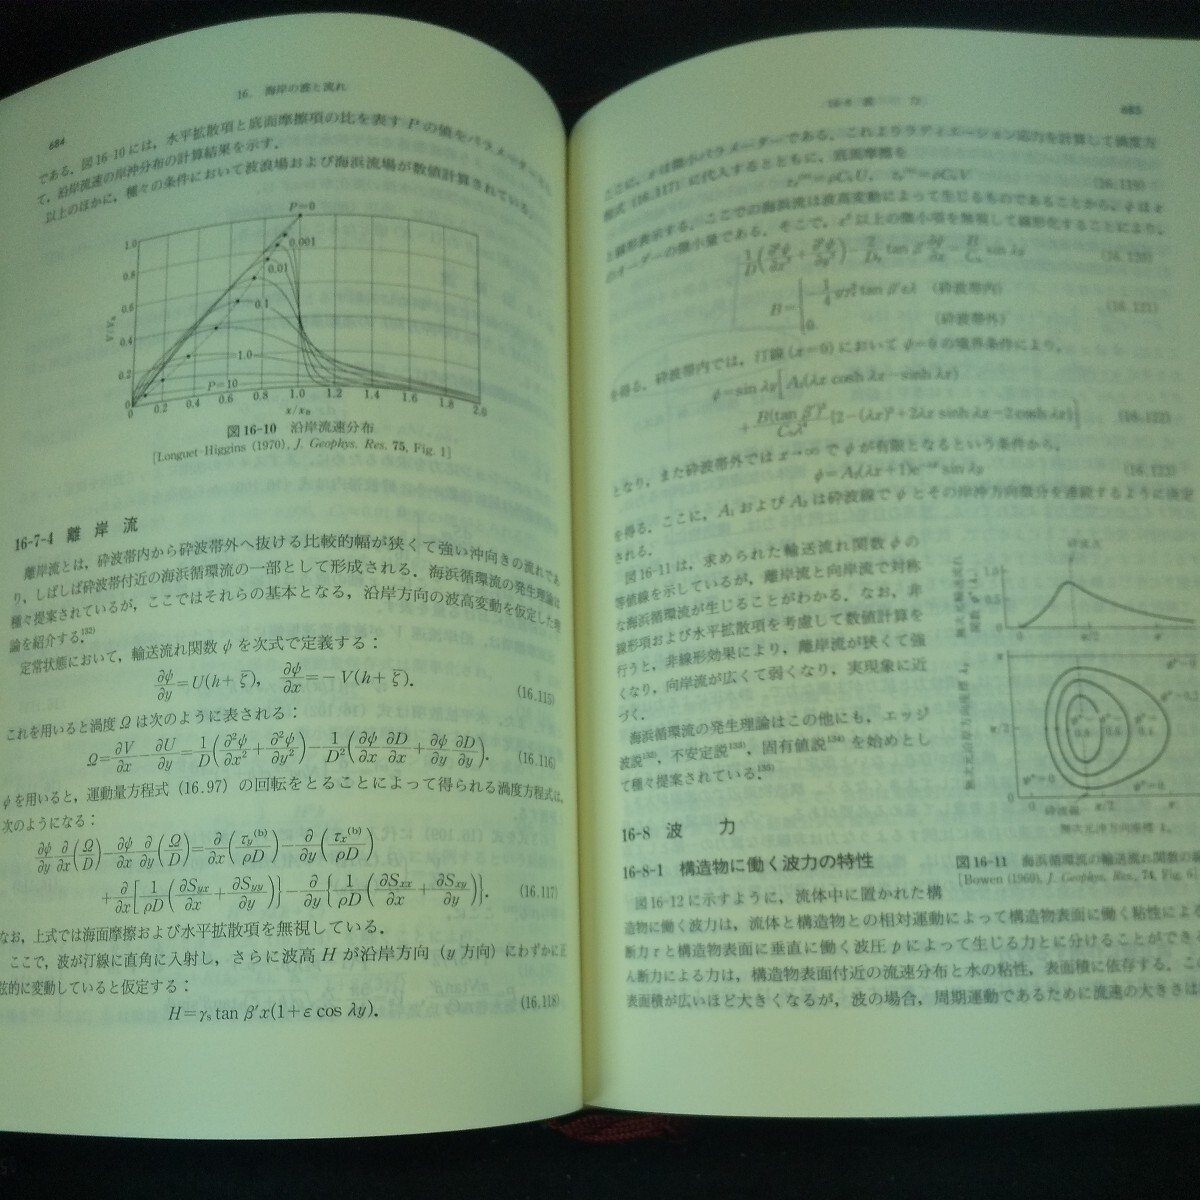 L-317 流体力学ハンドブック 日本流体力学会/編 第2版 丸善 箱入り 平成10年発行 基礎方程式 完全流体 粘性流体 圧縮性流体 など※10の画像5